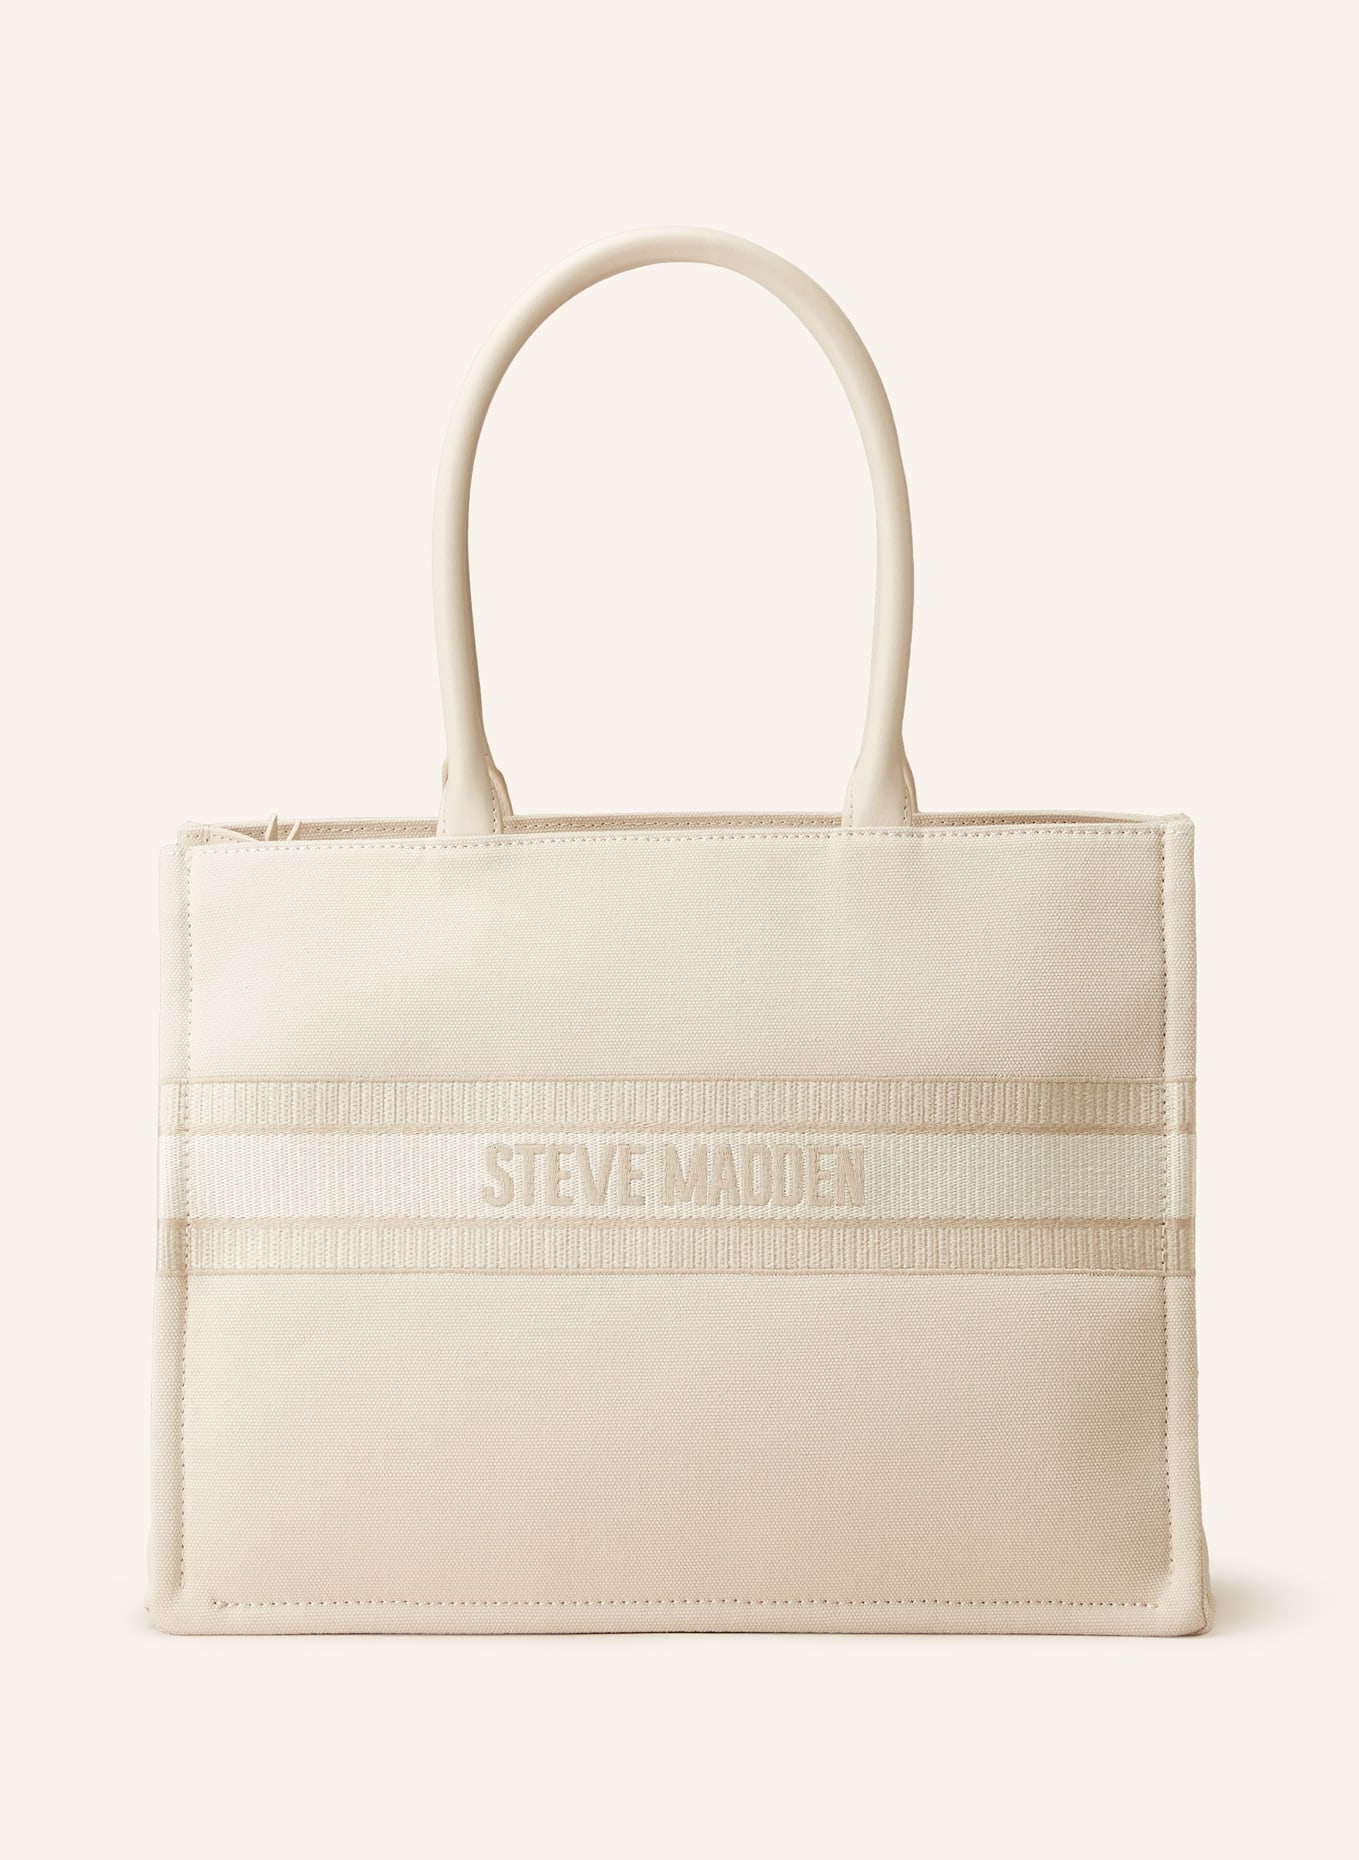 STEVE MADDEN Shopper BKNOX-SM, Farbe: ECRU/ CREME (Bild 1)